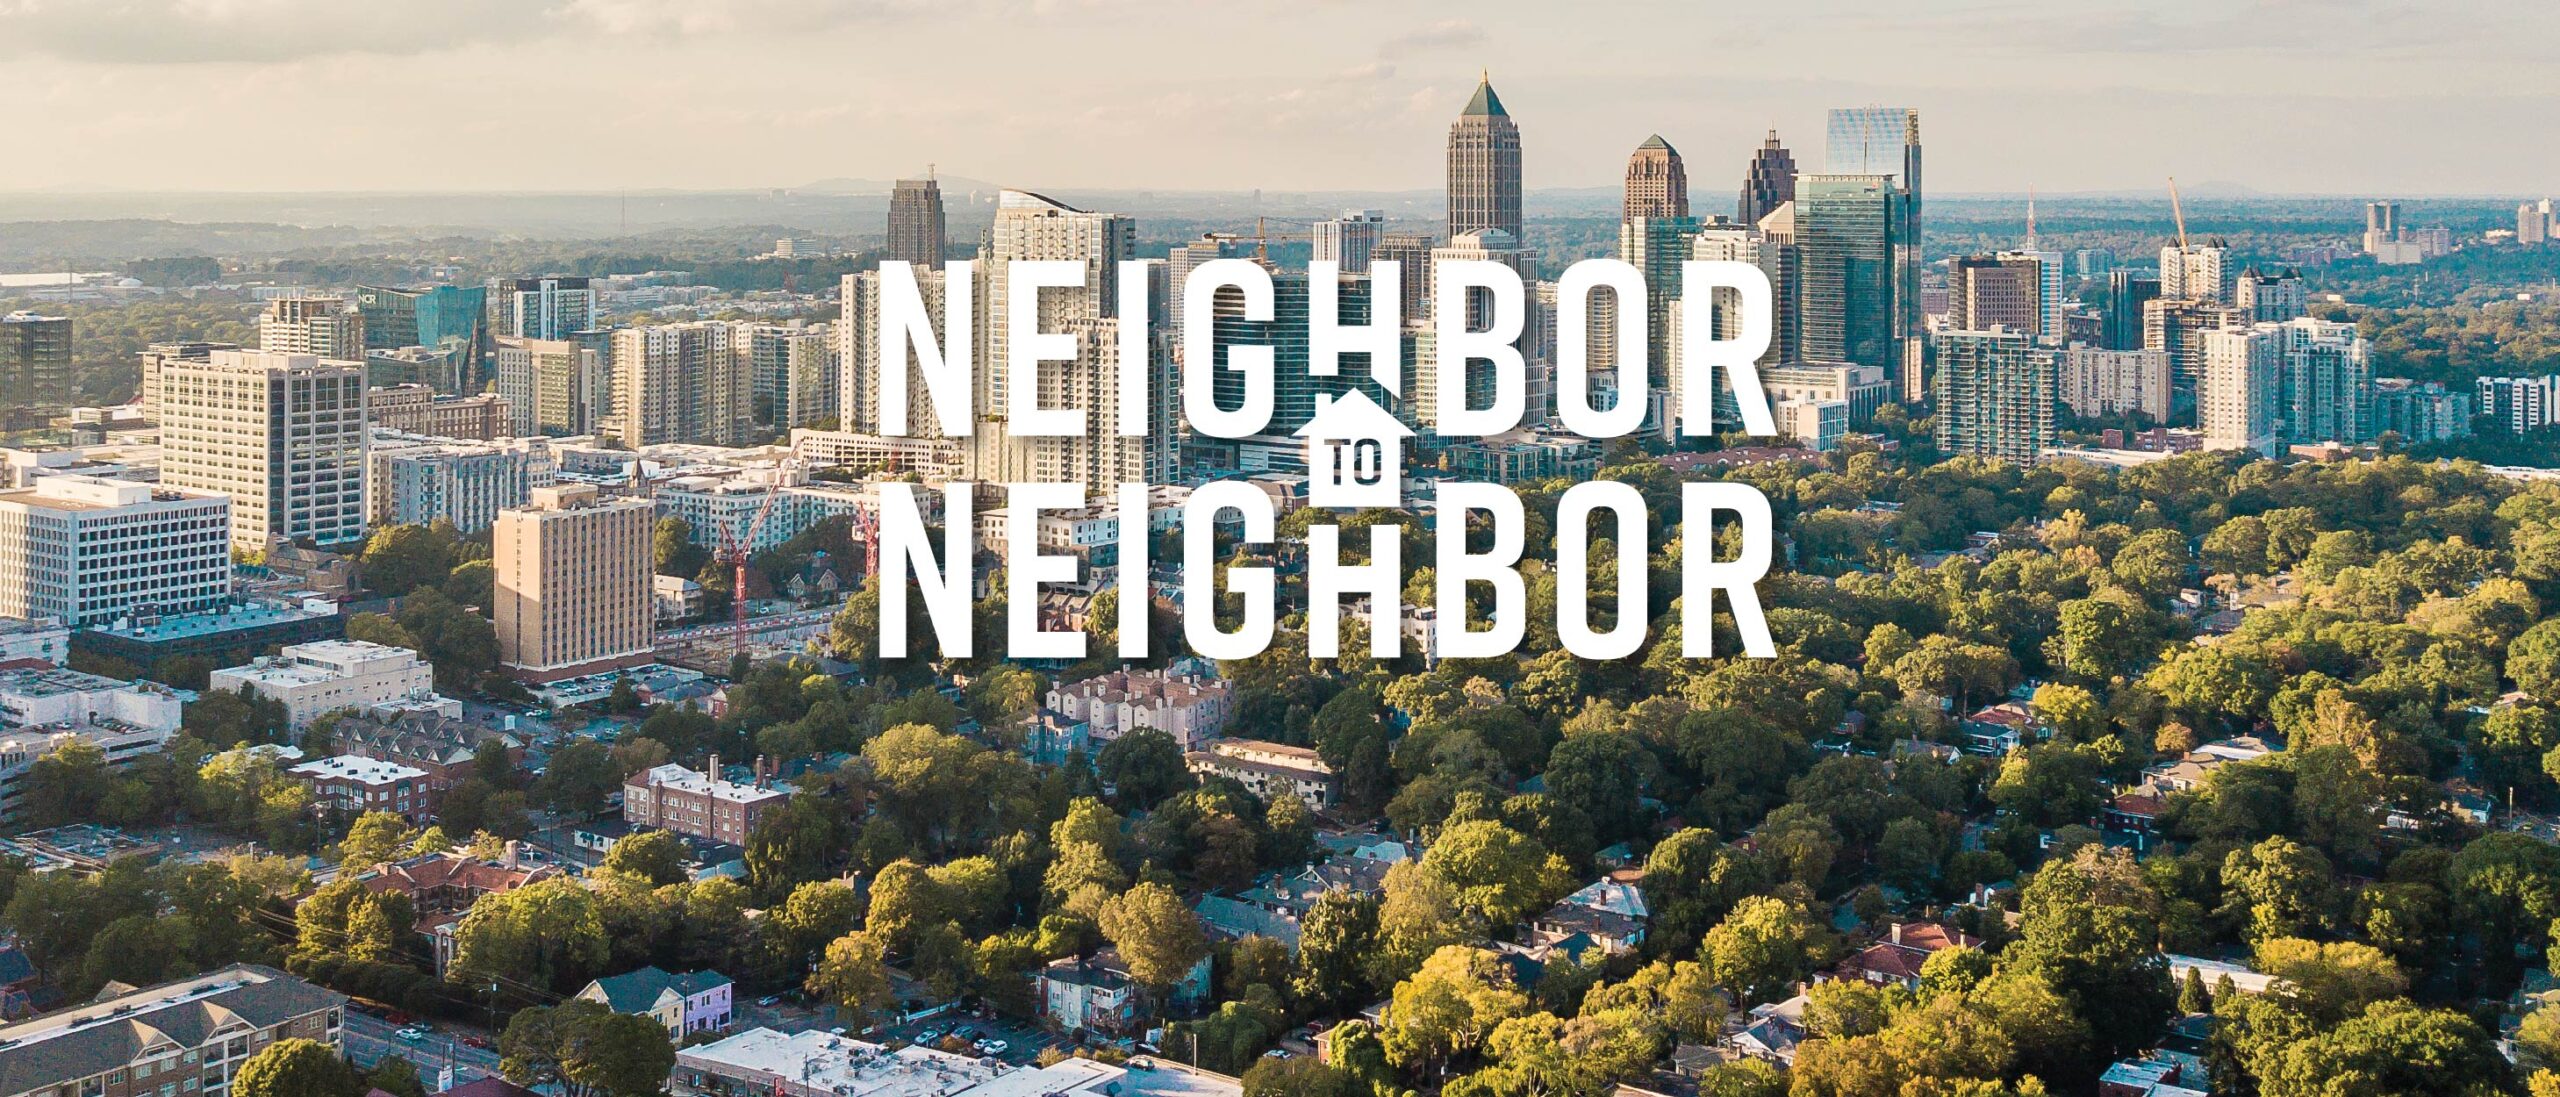 Neighbor to Neighbor Atlanta